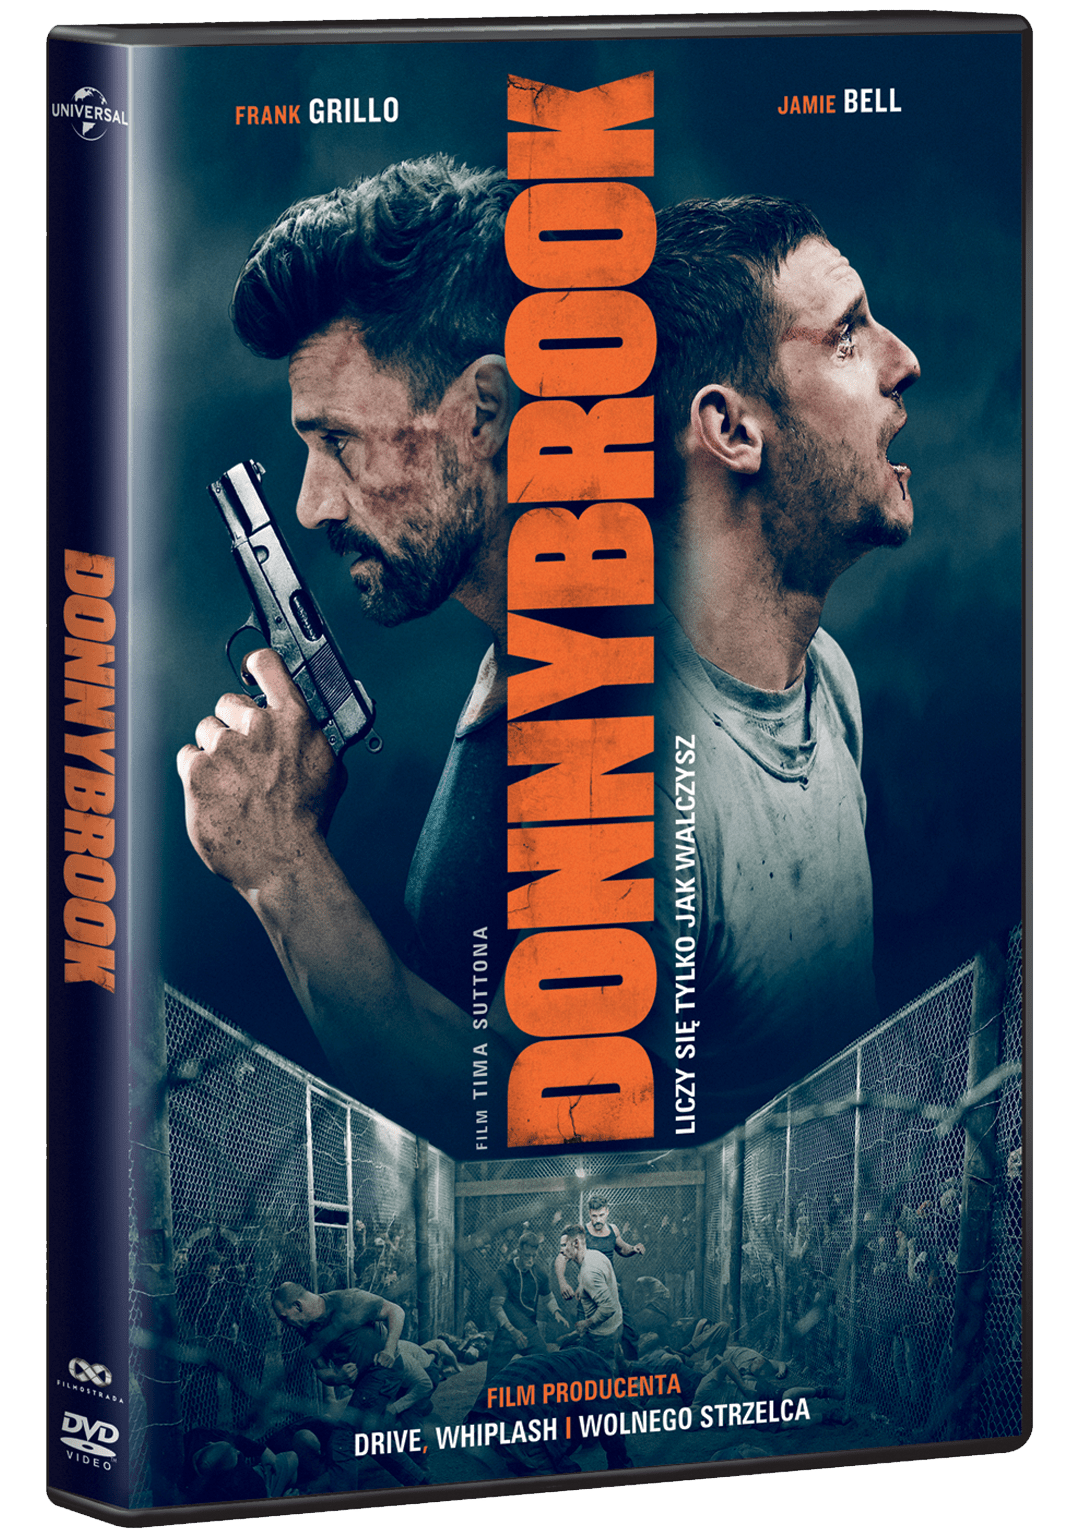 Donnybrook-DVD-pack-min.png